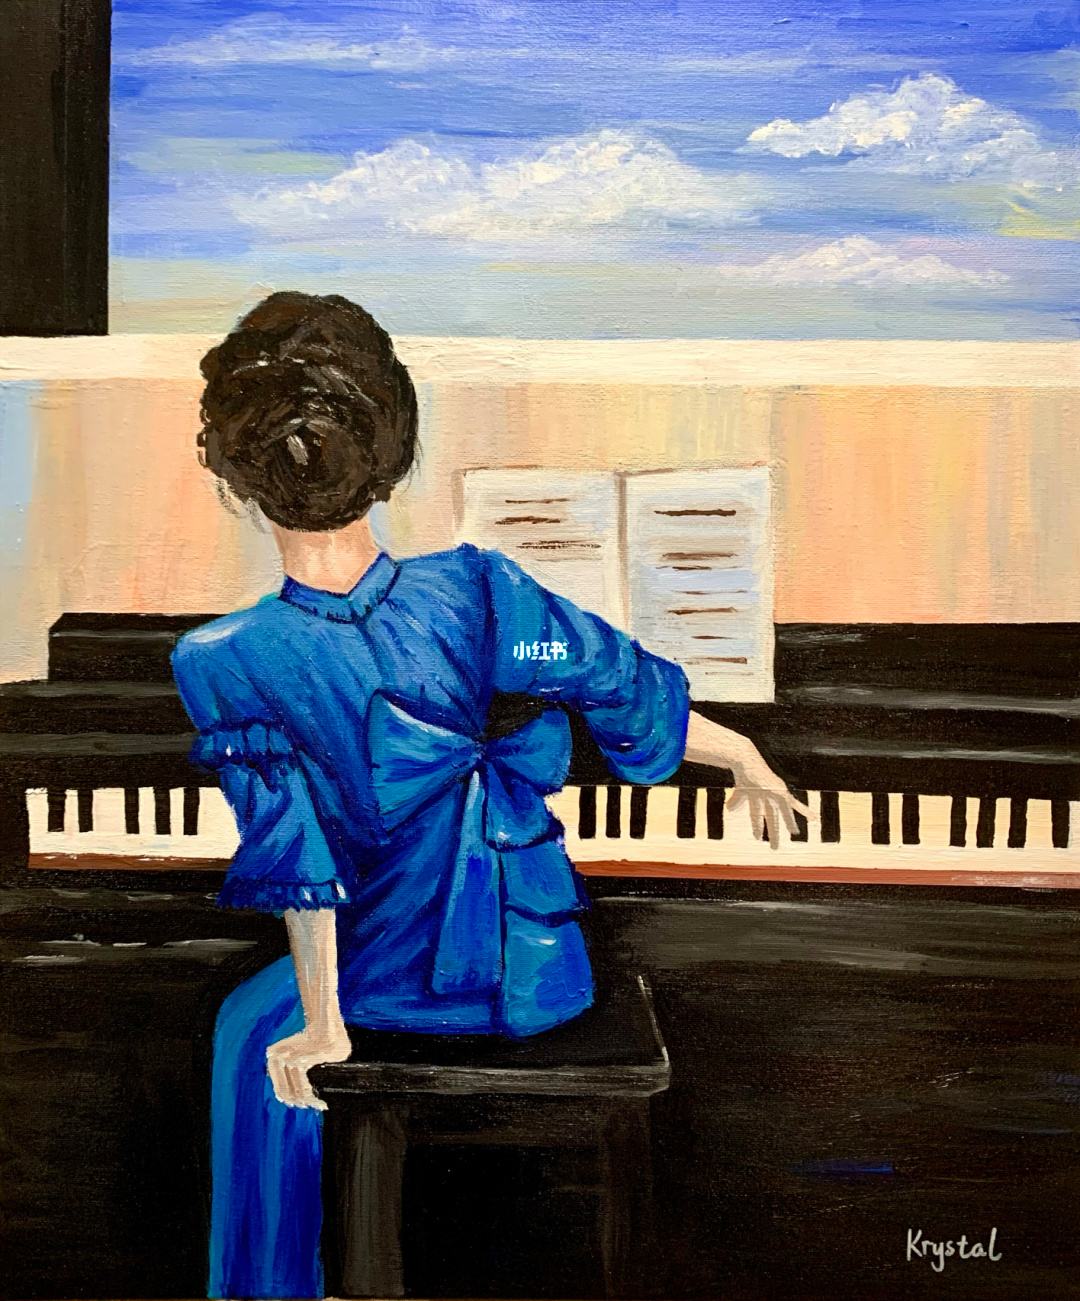 画一个女孩正在弹钢琴(画一个女孩正在弹钢琴的背影)